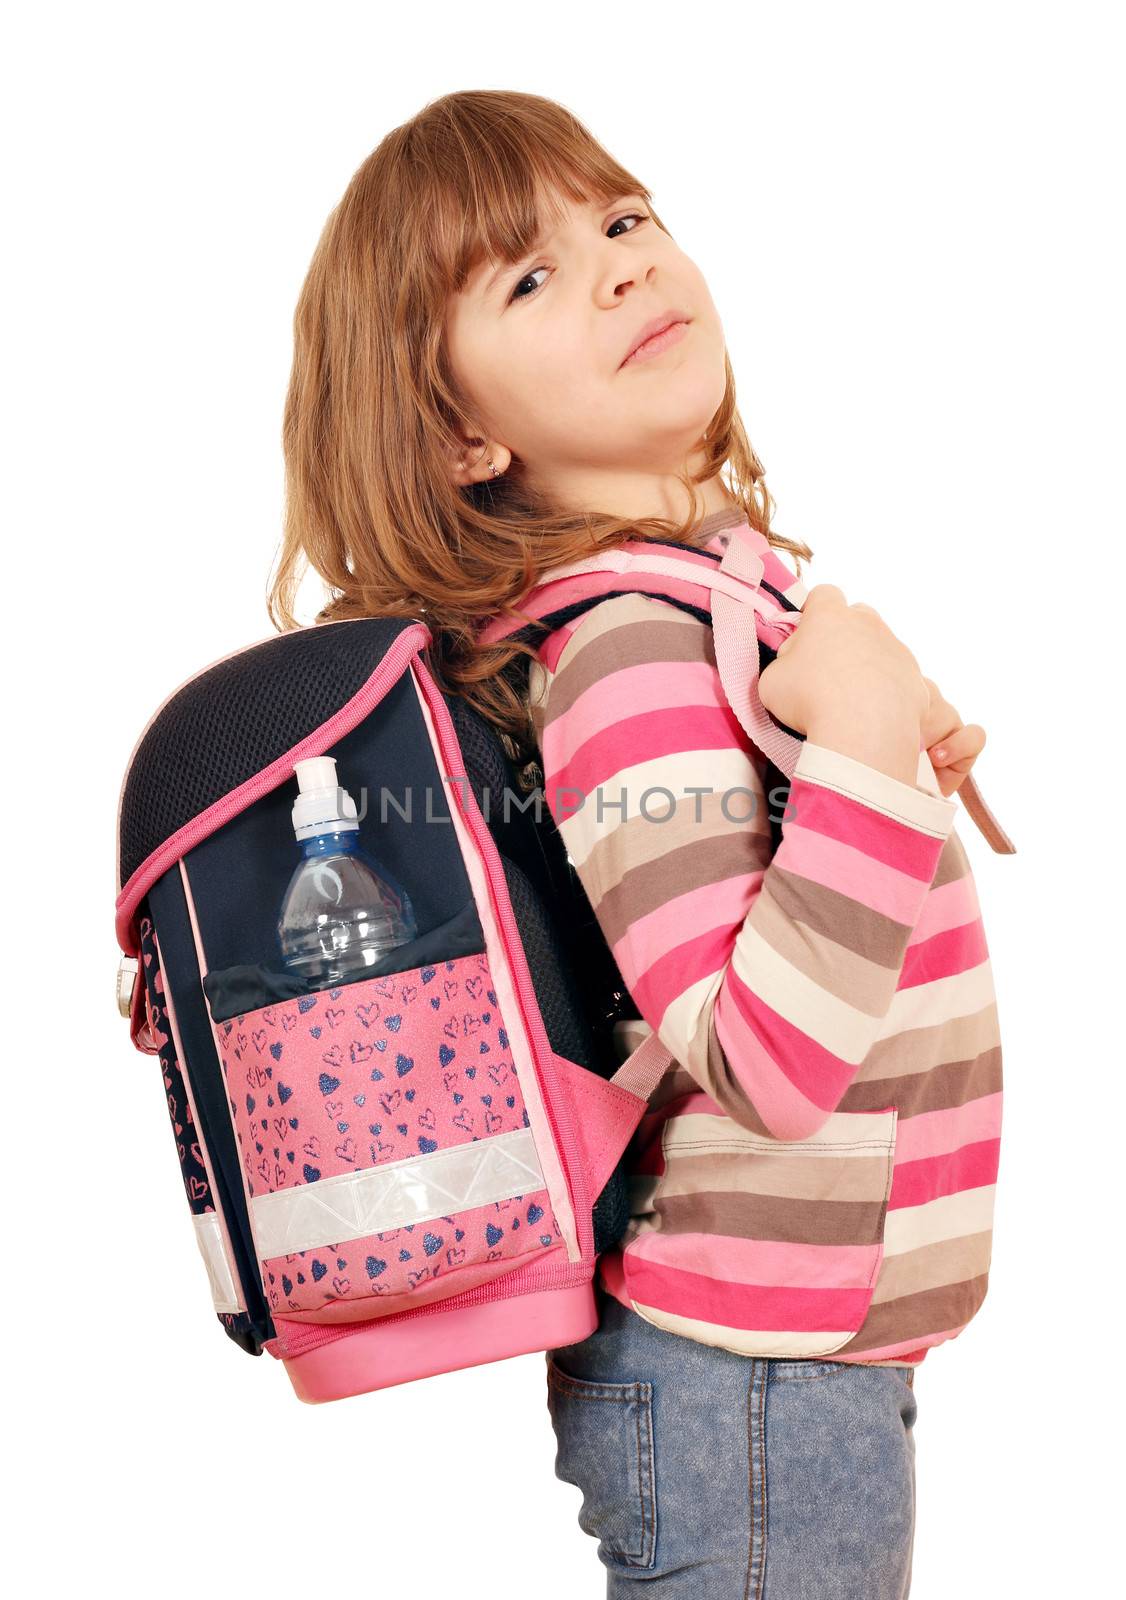 little girl carrying a heavy school bag  by goce